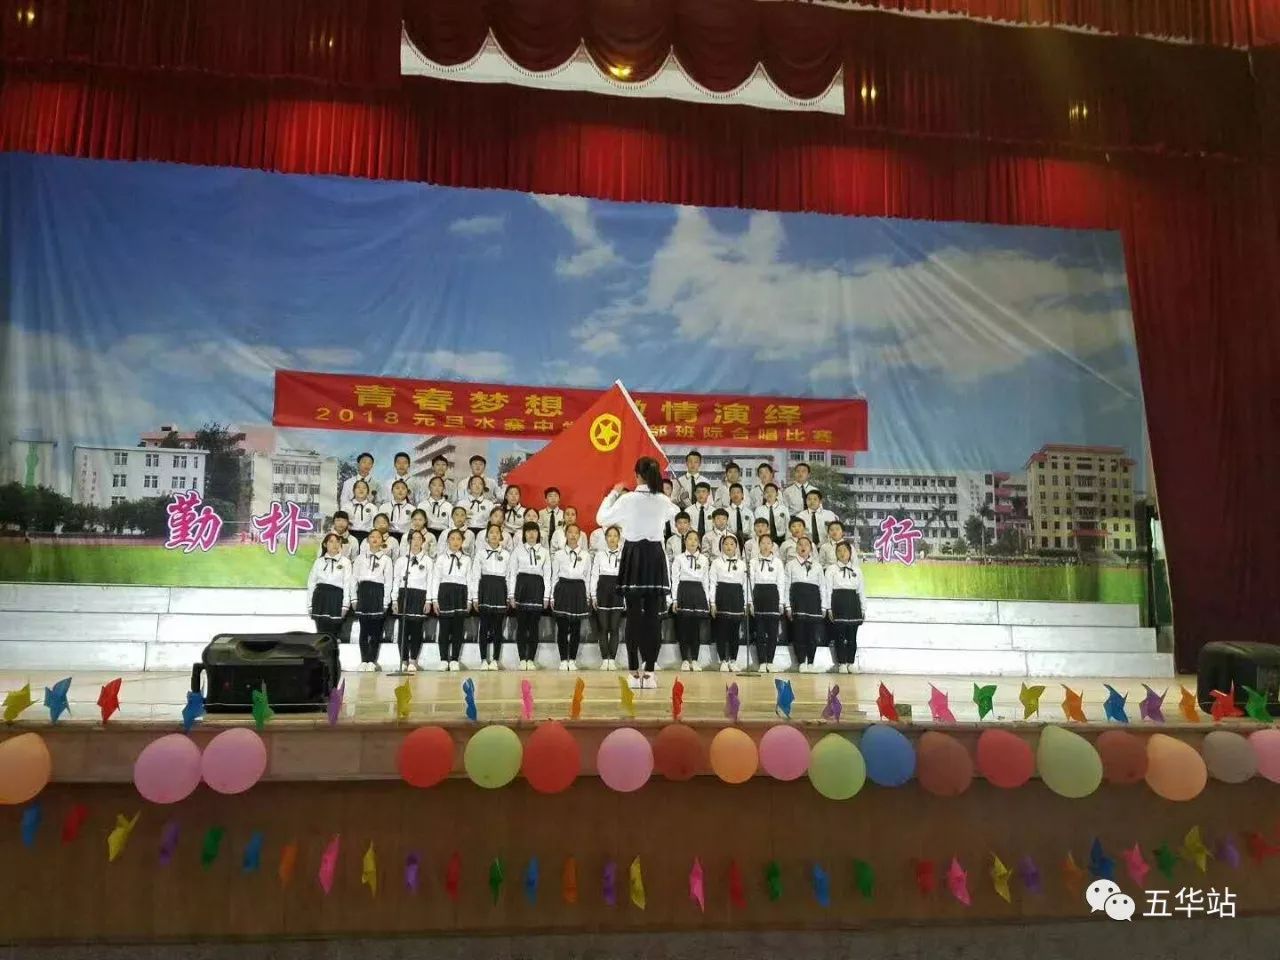 燃!2018年五华水寨中学合唱比赛,太棒了!